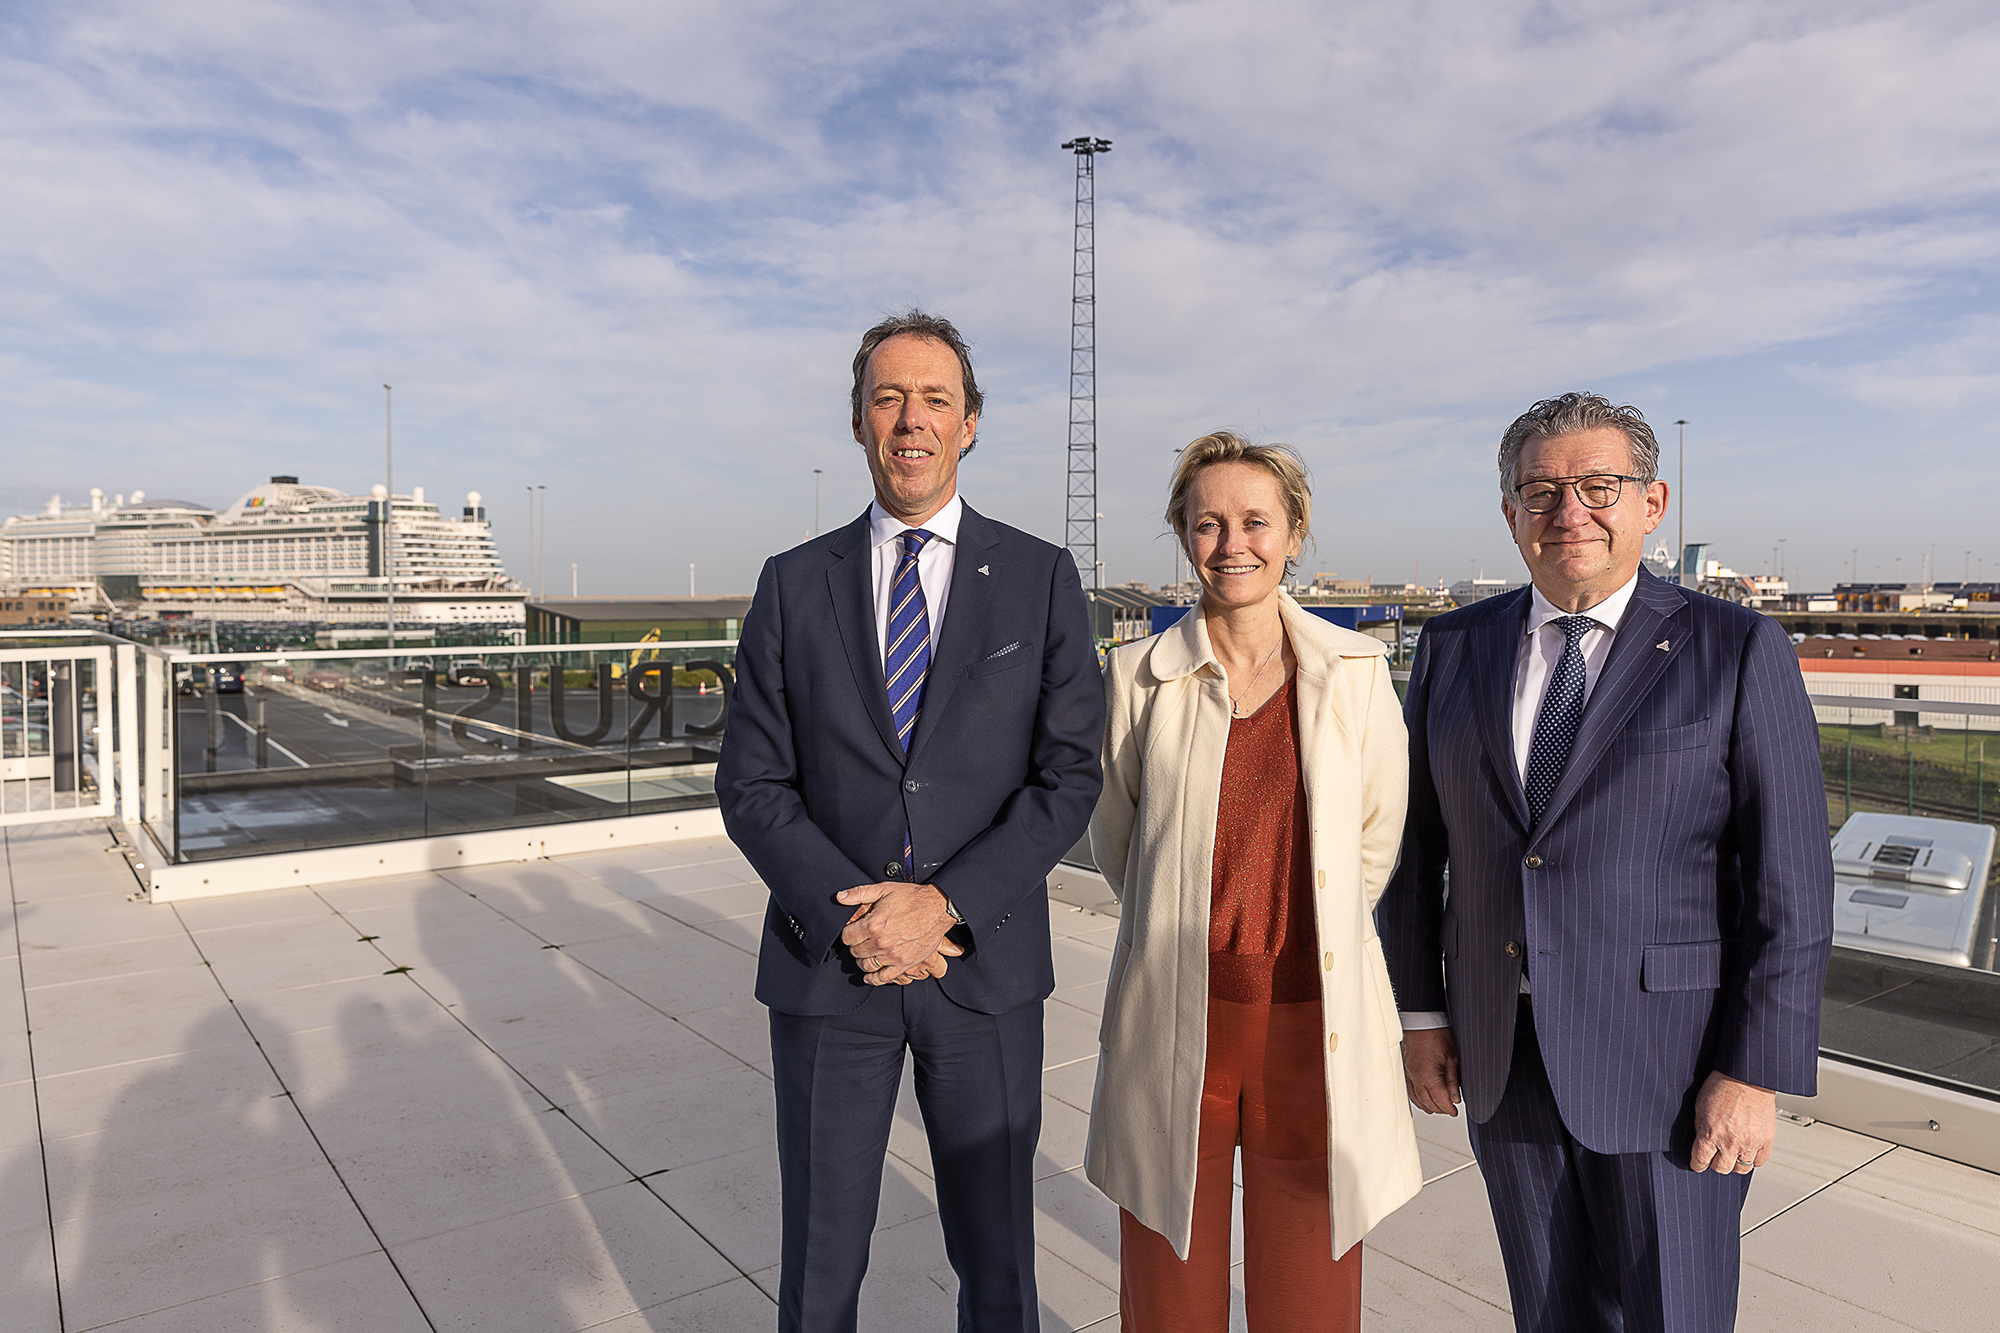 Hafen-CEO Jacques Vandermeiren, Annick De Ridder und Dirk De Fauw, der Vorsitzende des Hafens von Zeebrugge (Bild: James Arthur Gekiere/Belga)